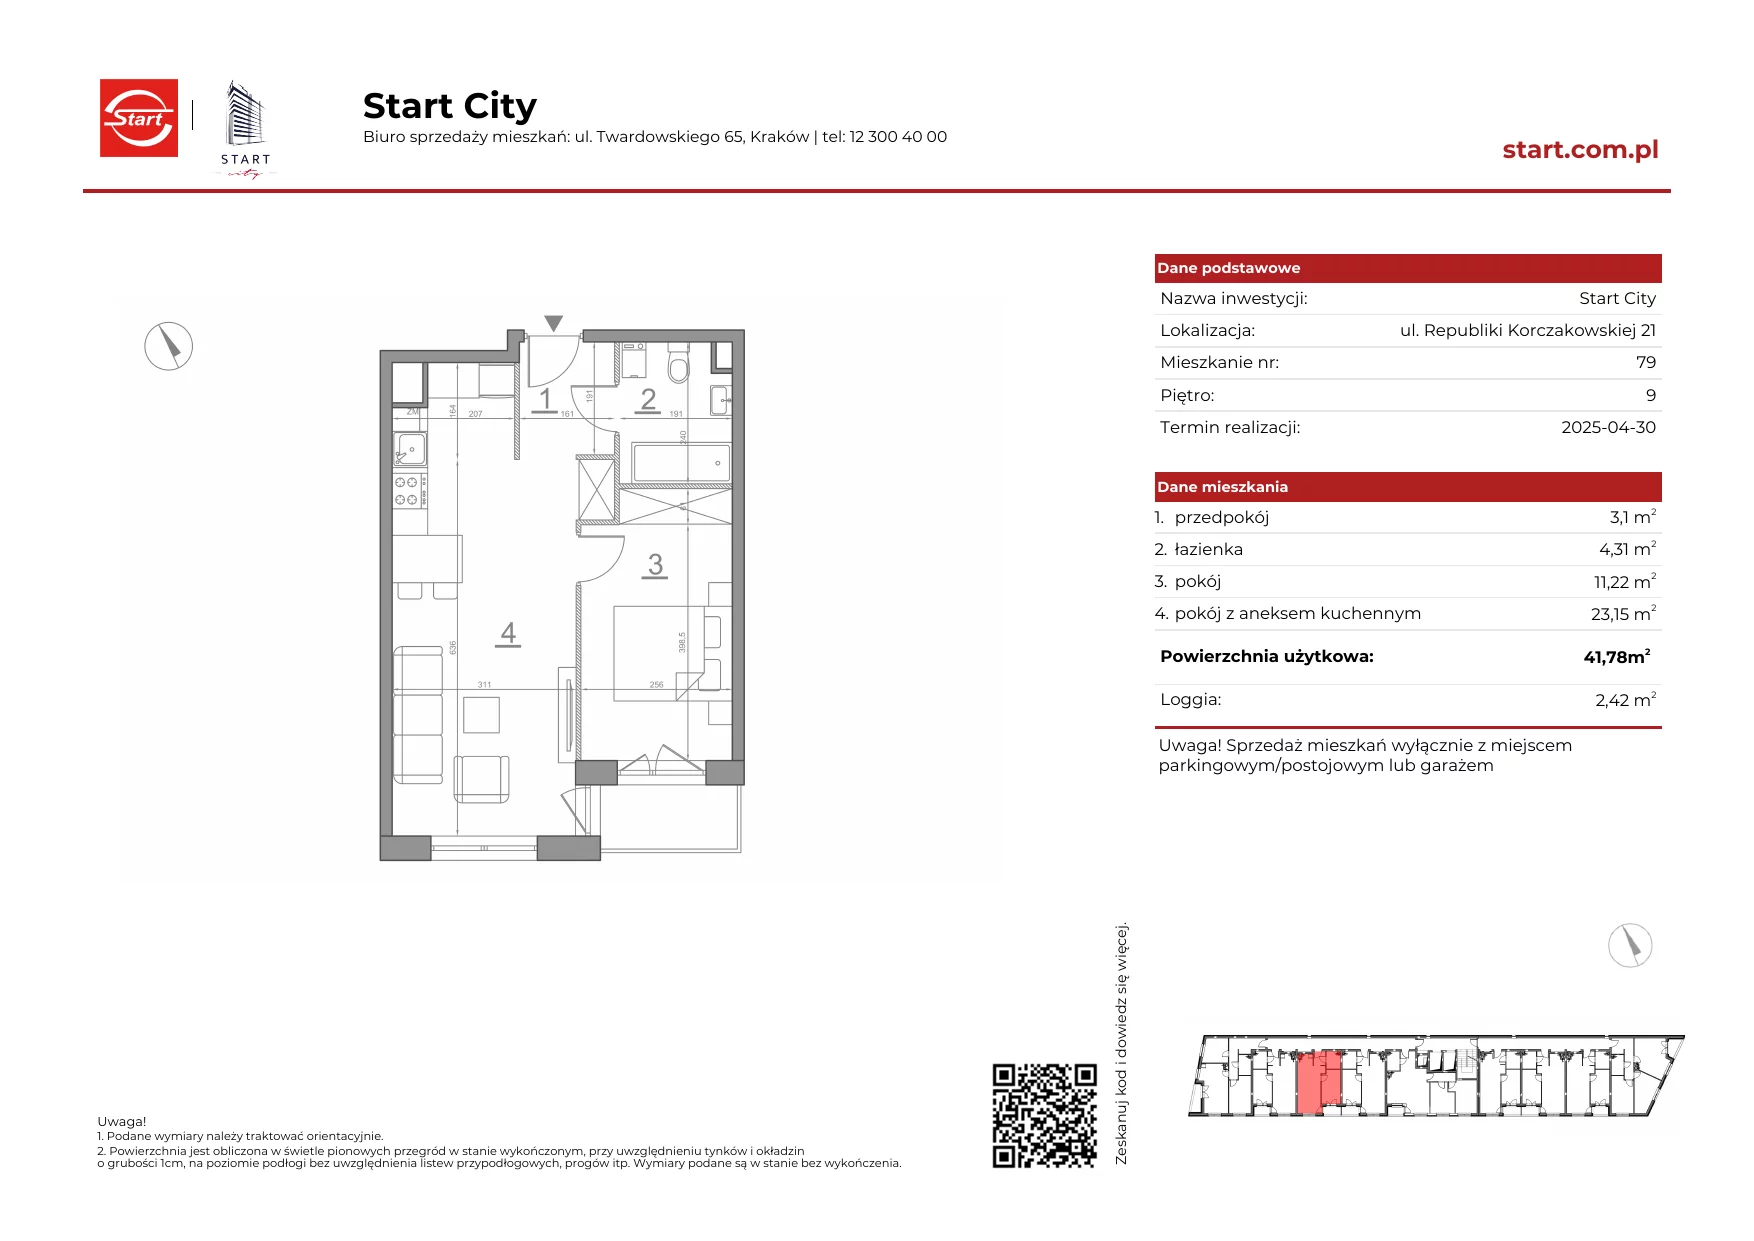 Mieszkanie 41,78 m², piętro 9, oferta nr 21/79, Start City, Kraków, Bieżanów-Prokocim, ul. Republiki Korczakowskiej 21